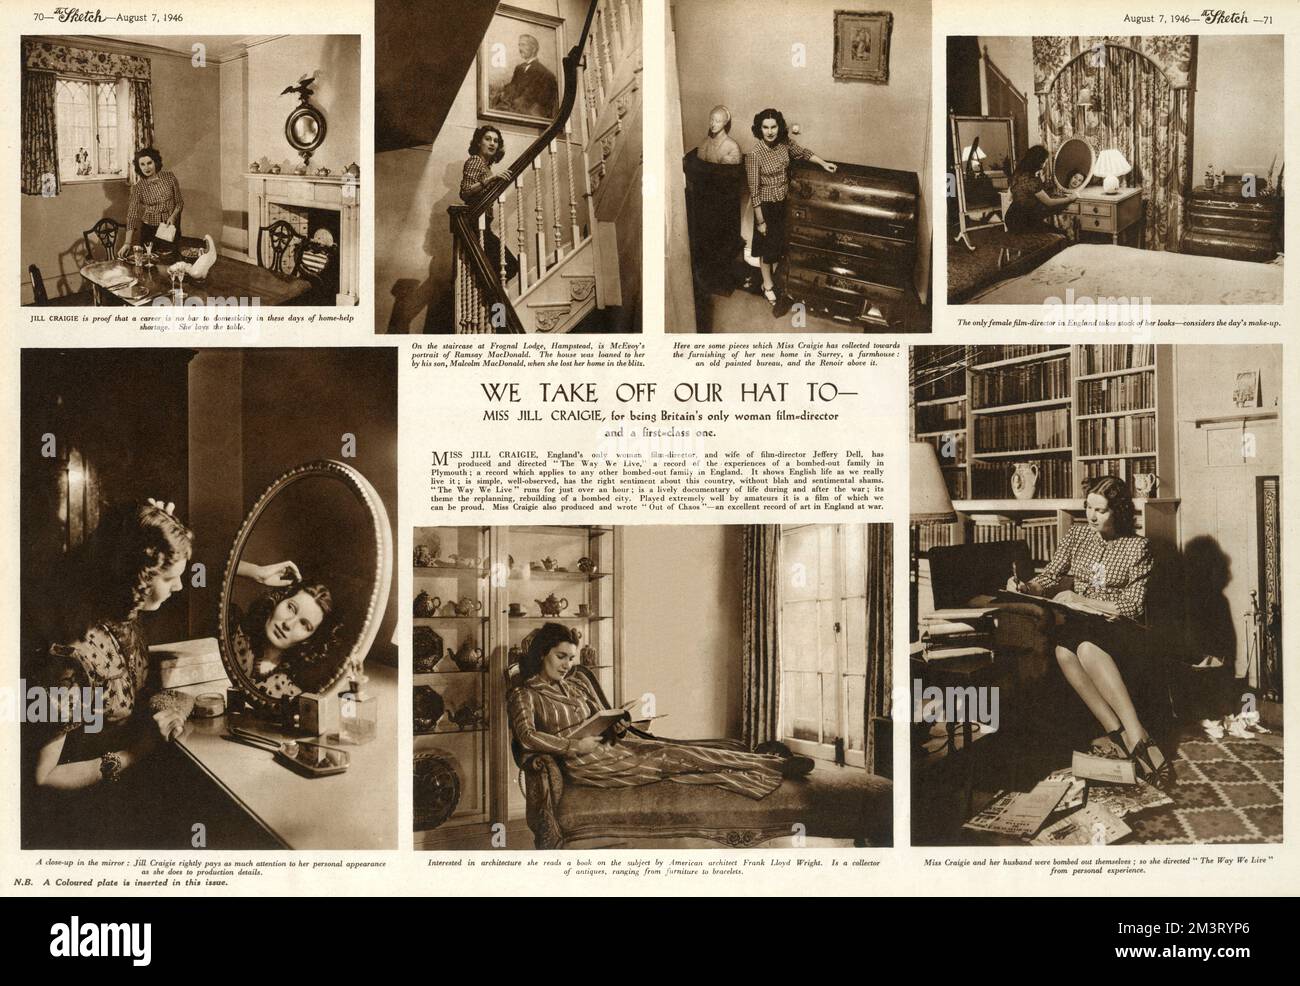 Filmregisseur Jill Craigie (1911-1999), englische Dokumentarfilmregisseurin, Drehbuchautor und Feministin, fotografiert in ihrem Haus. Auf dem Brett werden verschiedene Szenen gezeigt, darunter das Lesen von Craigie mit ihren Möbeln und Kunstsammlungen sowie das Make-up. Datum: 1946 Stockfoto